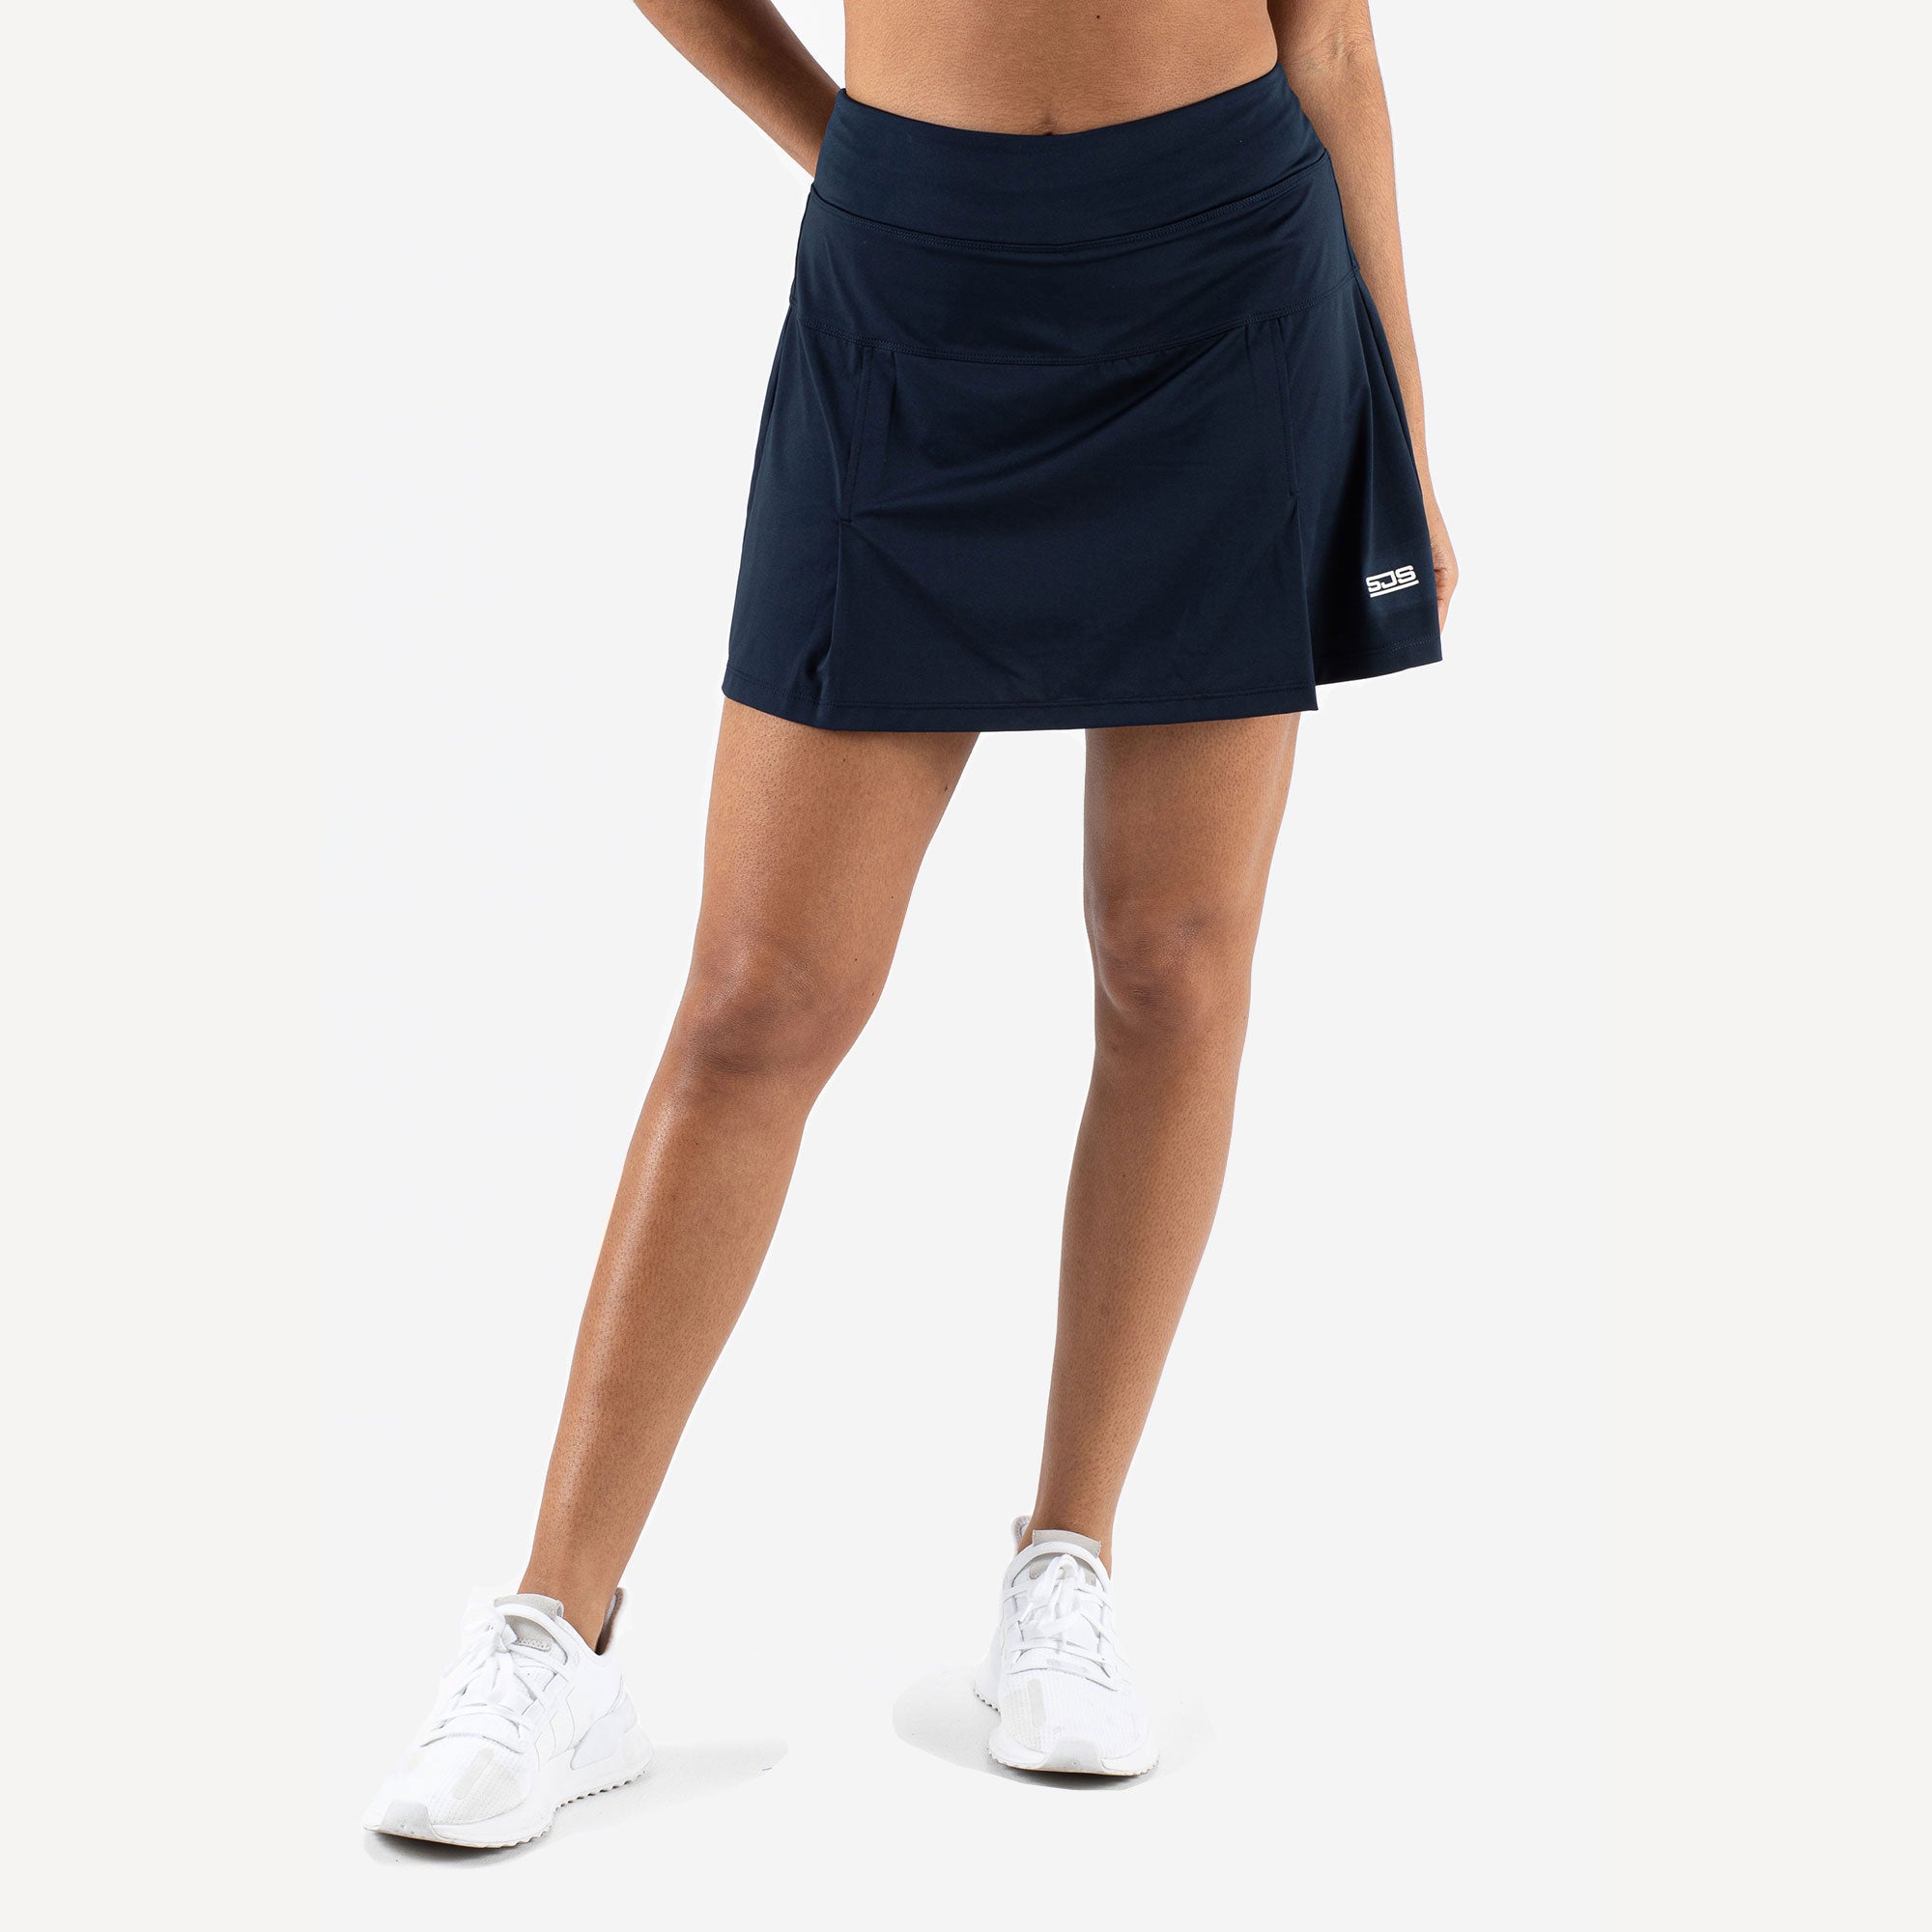 Sjeng Sports Sharona Women's Tennis Skirt Blue (1)